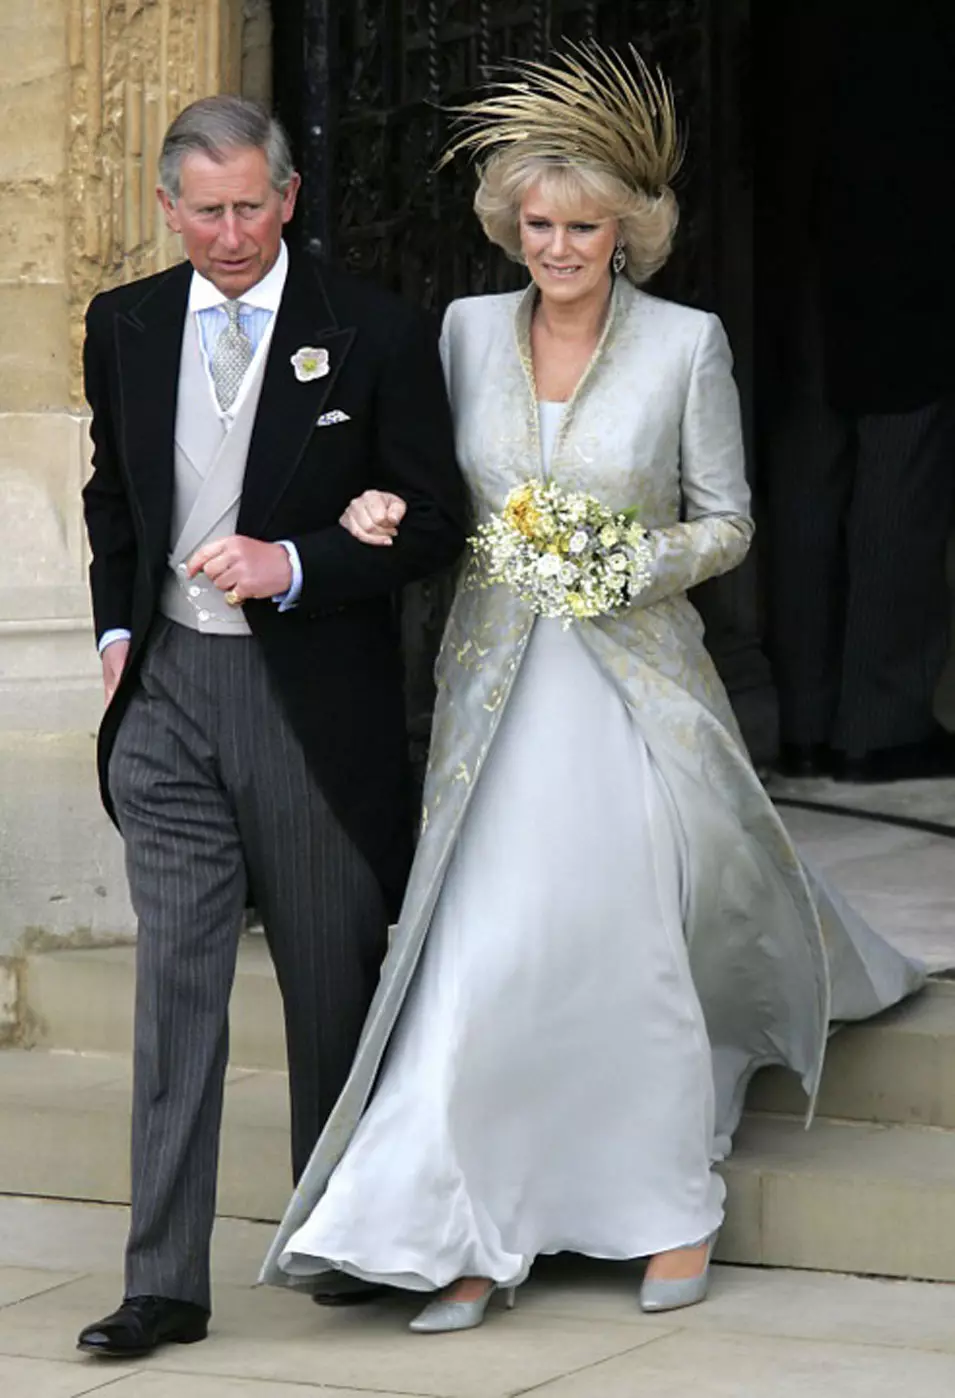 קמילה, הדוכסית מקורנוול, (אז קמילה פרקר בואלס) בחתונתה לנסיך צ'ארלס, ארמון ווינדזור, 9 אפריל 2005